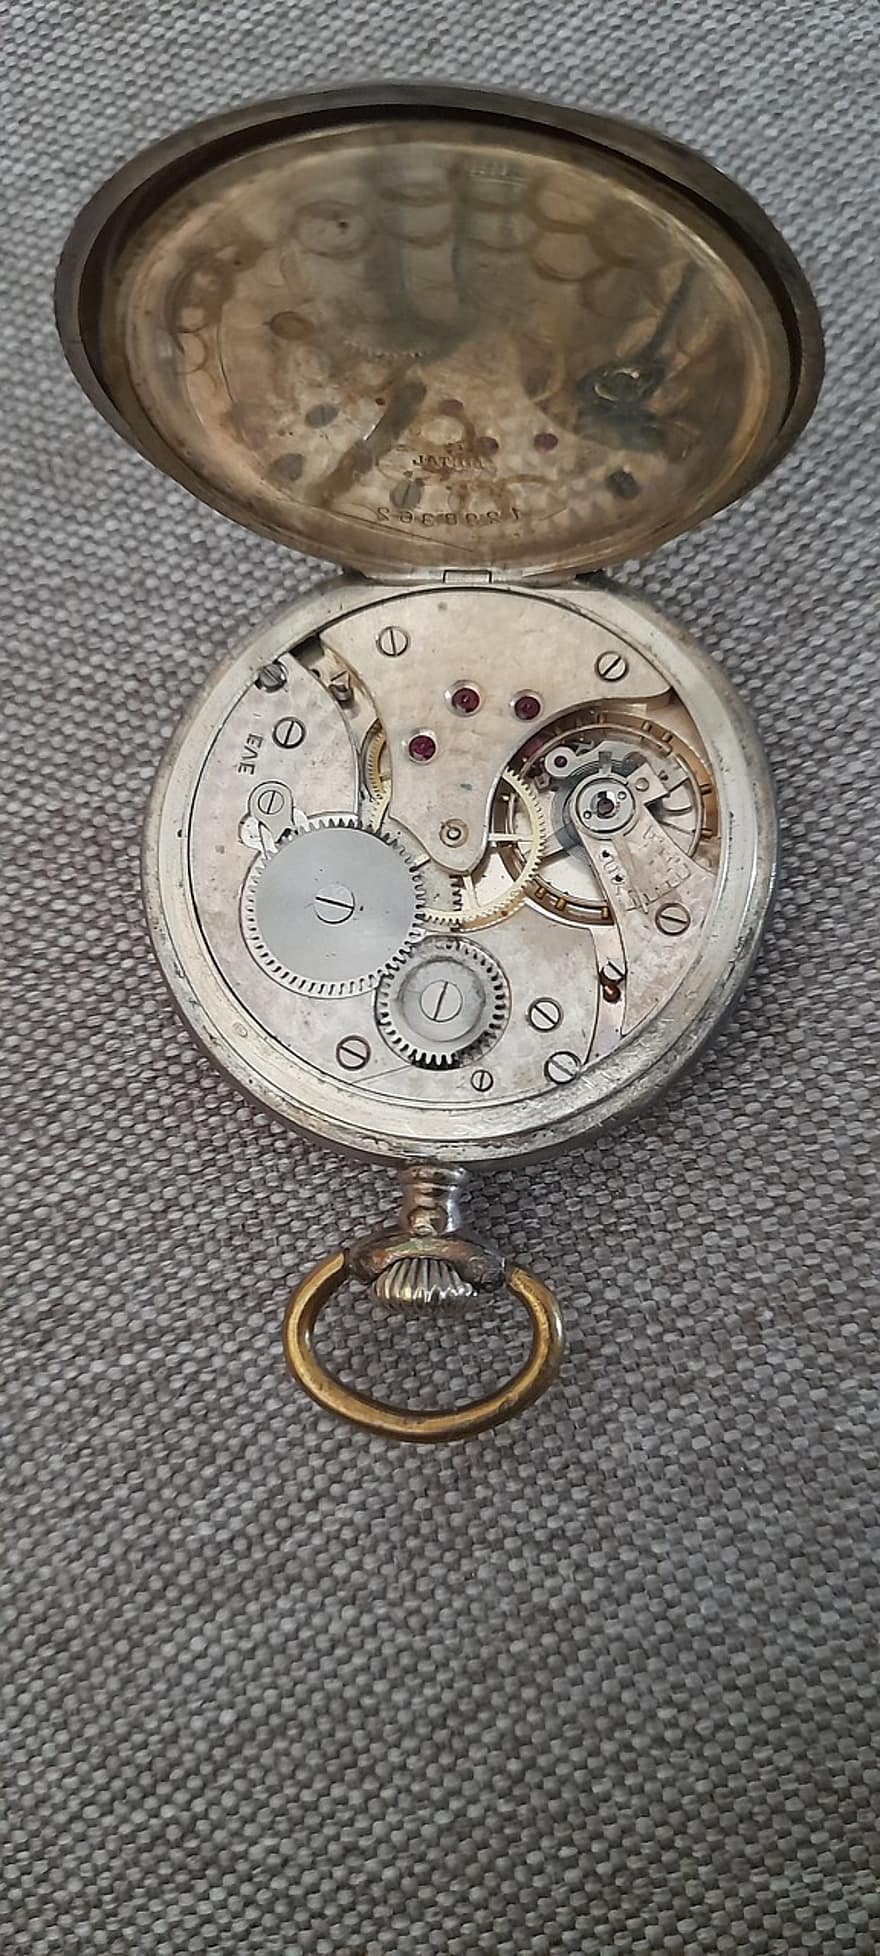 dívej se, kapesní hodinky, Vintage kapesní hodinky, Starožitné kapesní hodinky, hodinářství, starý, použitý, vzpomínky, zadní, hodin, minut